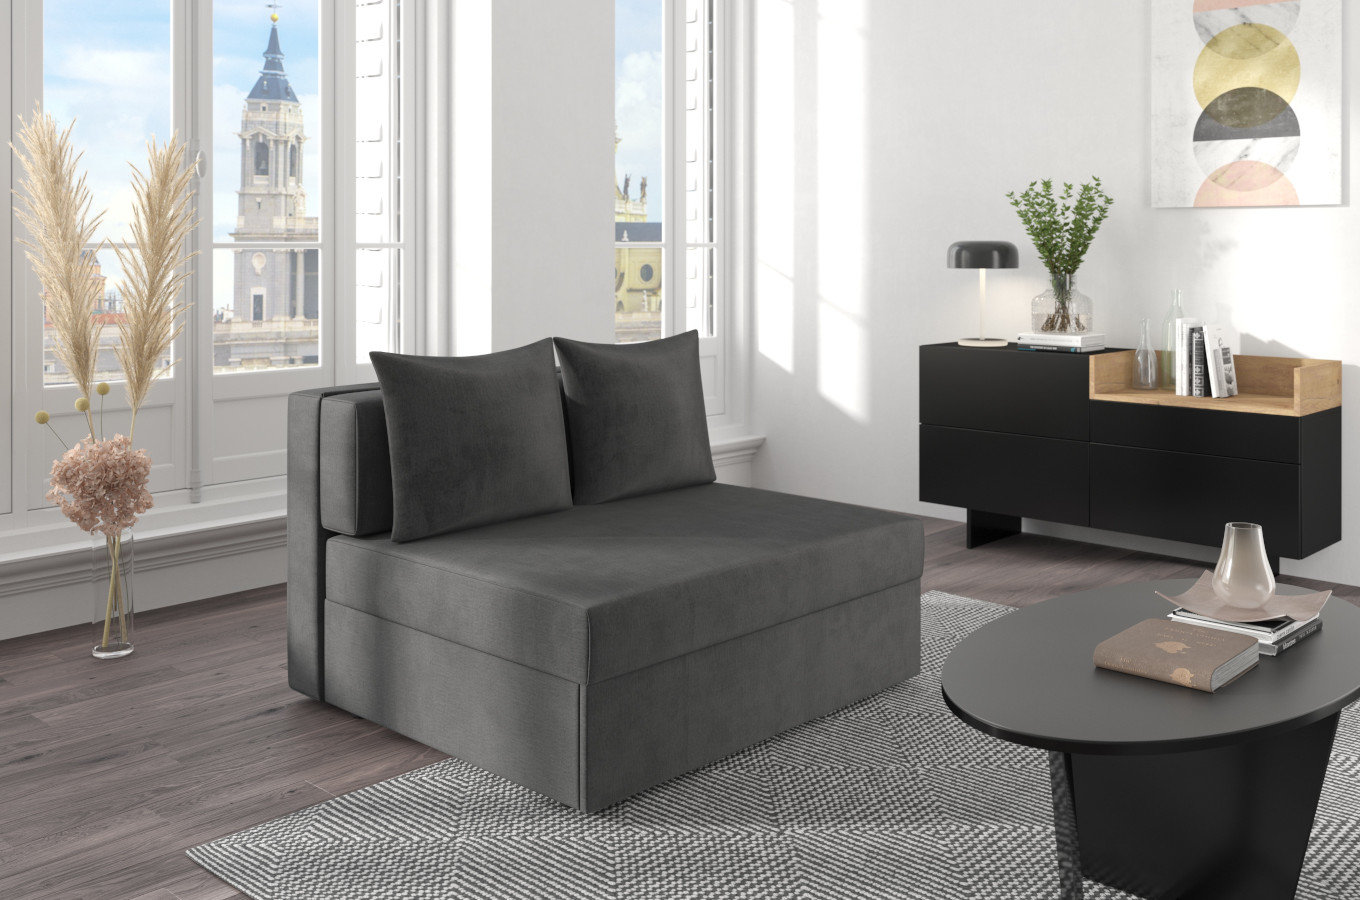 Ciemno-szara rozkładana sofa Dancan OLGA z funkcją spania i pojemnikiem na pościel / szerokość 116 cm